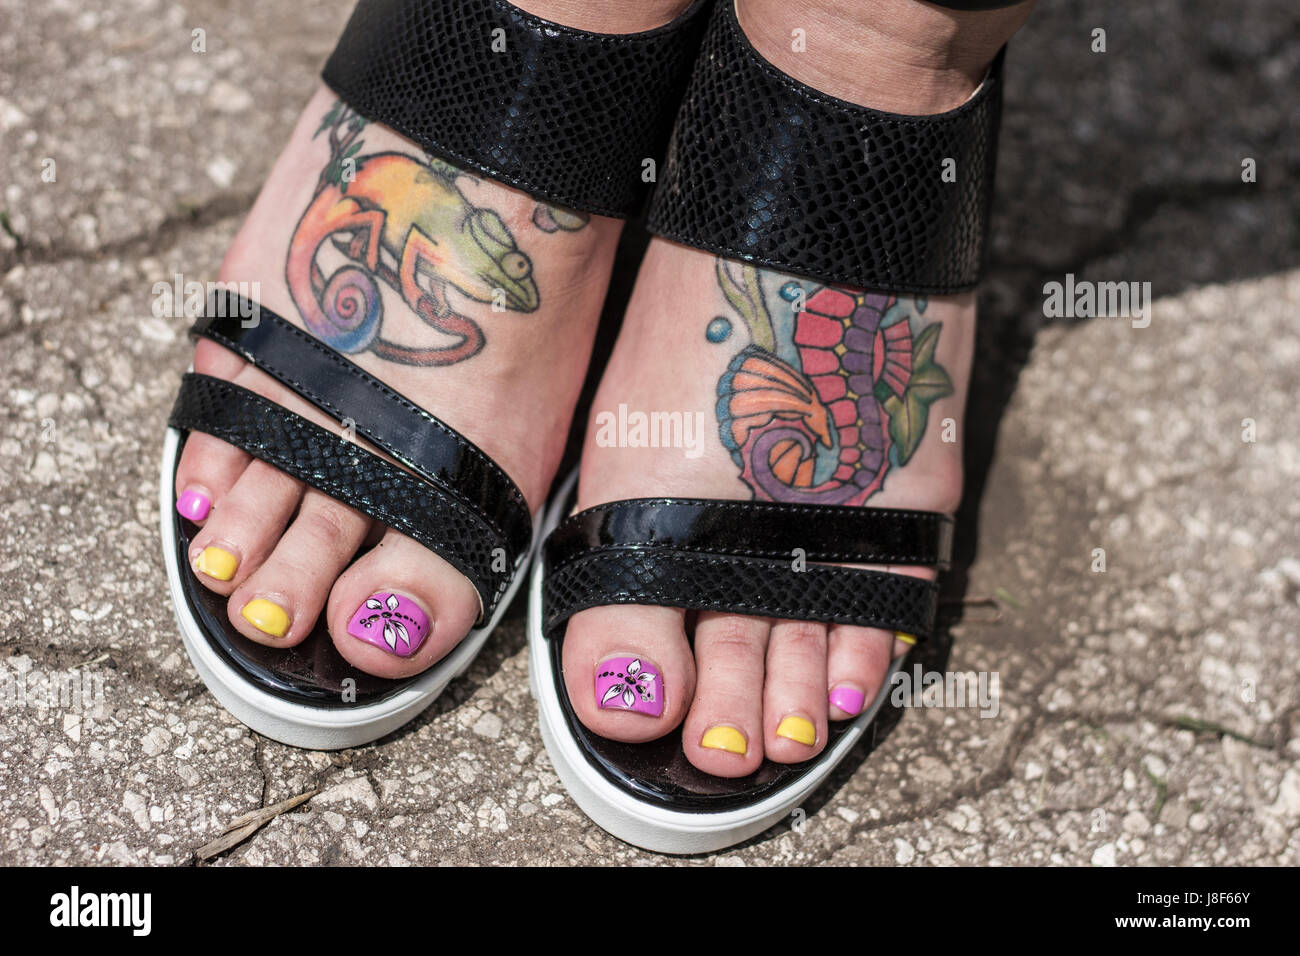 Pieds en sandales femme avec gros plan de tatouage Banque D'Images